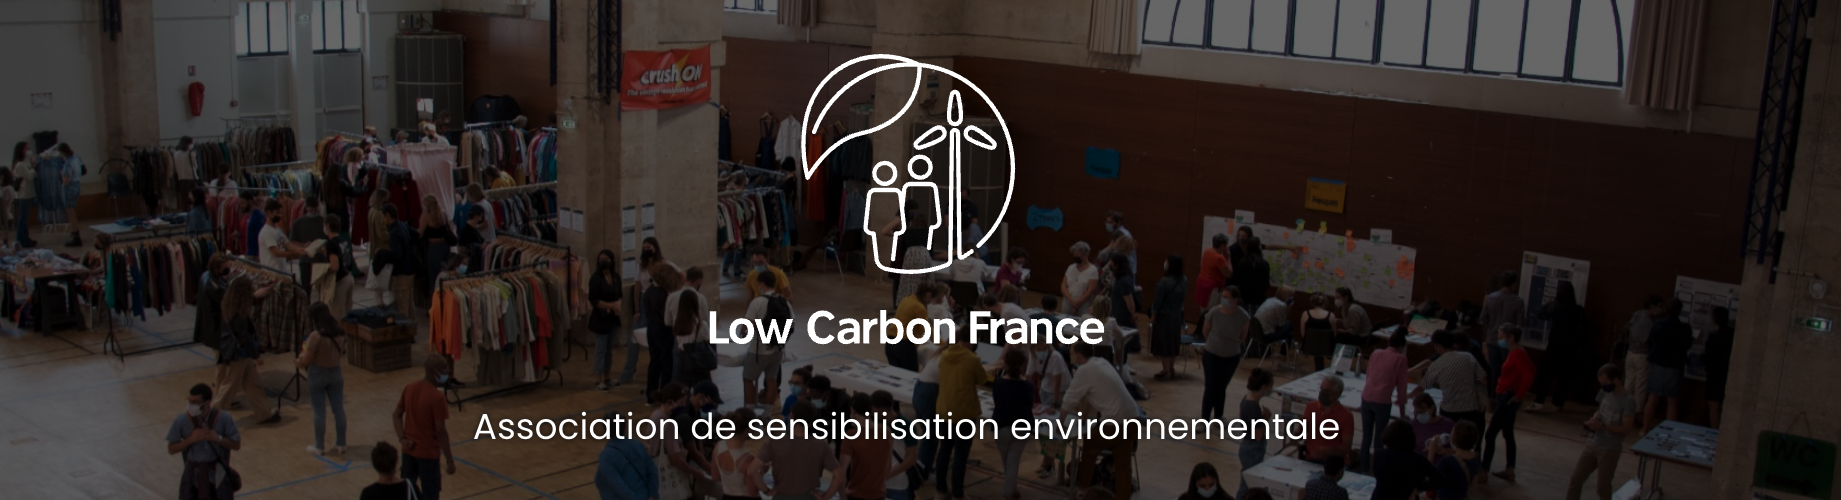 Bannière de Low Carbon France